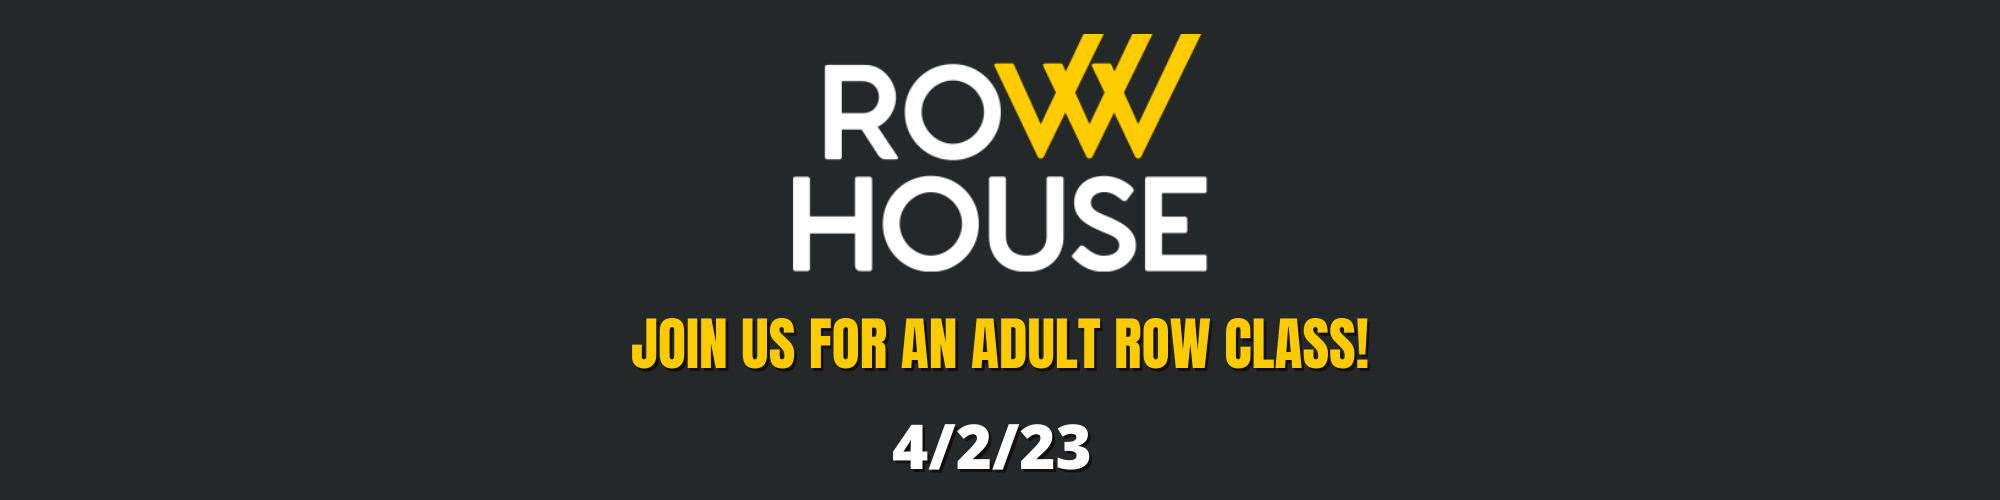 row house 4 2 23